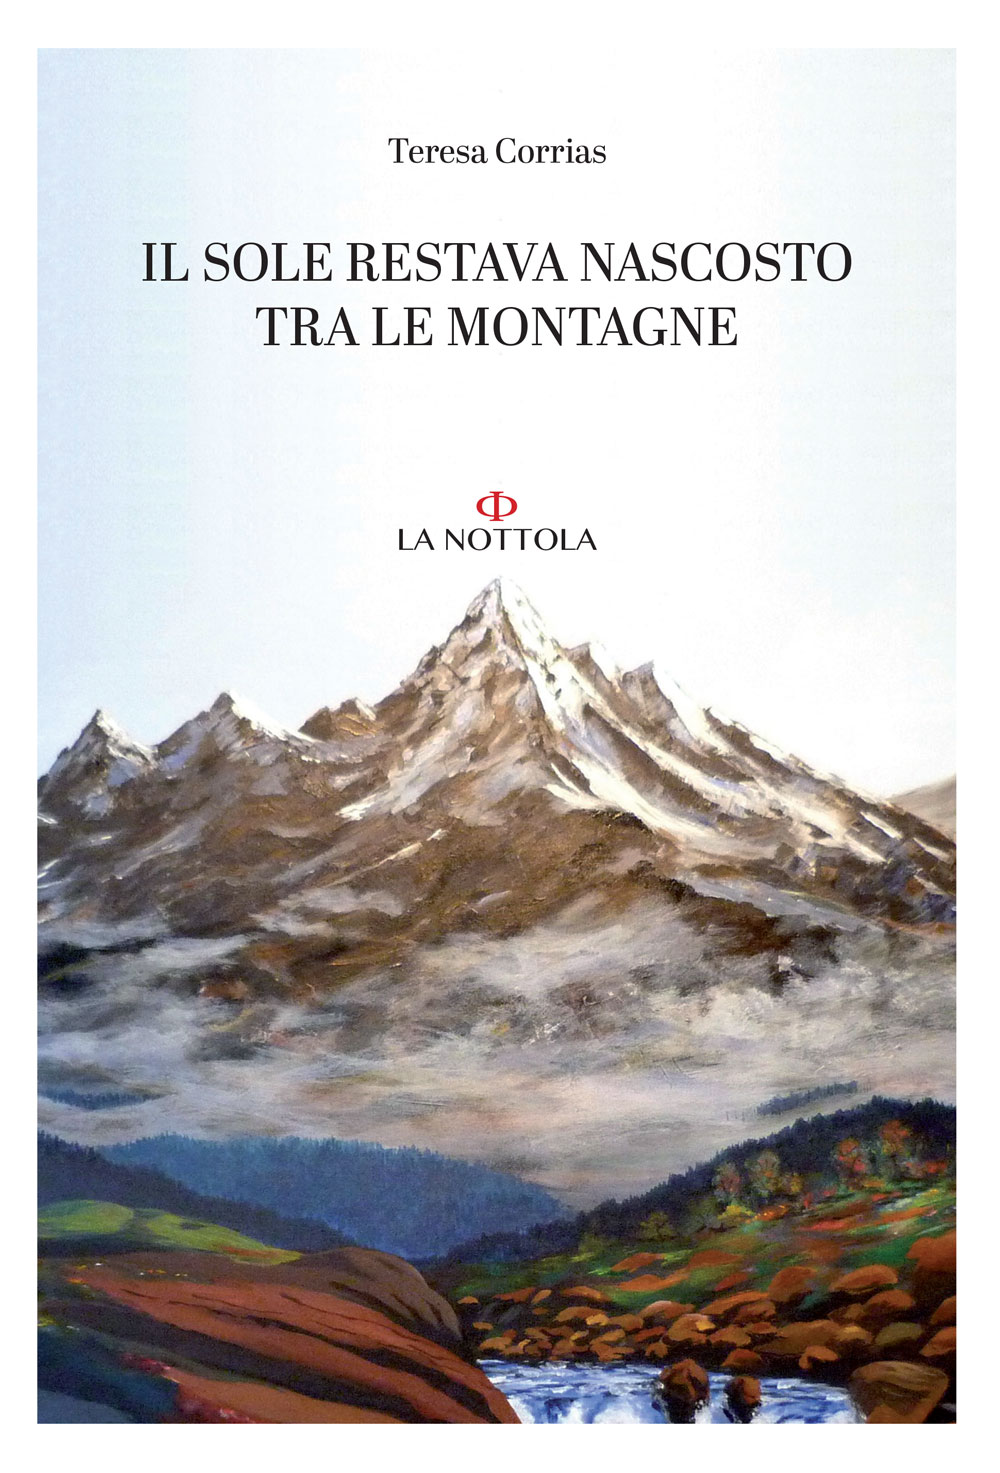 Libri Teresa Corrias - Il Sole Restava Nascosto Tra Le Montagne NUOVO SIGILLATO, EDIZIONE DEL 05/01/2021 SUBITO DISPONIBILE